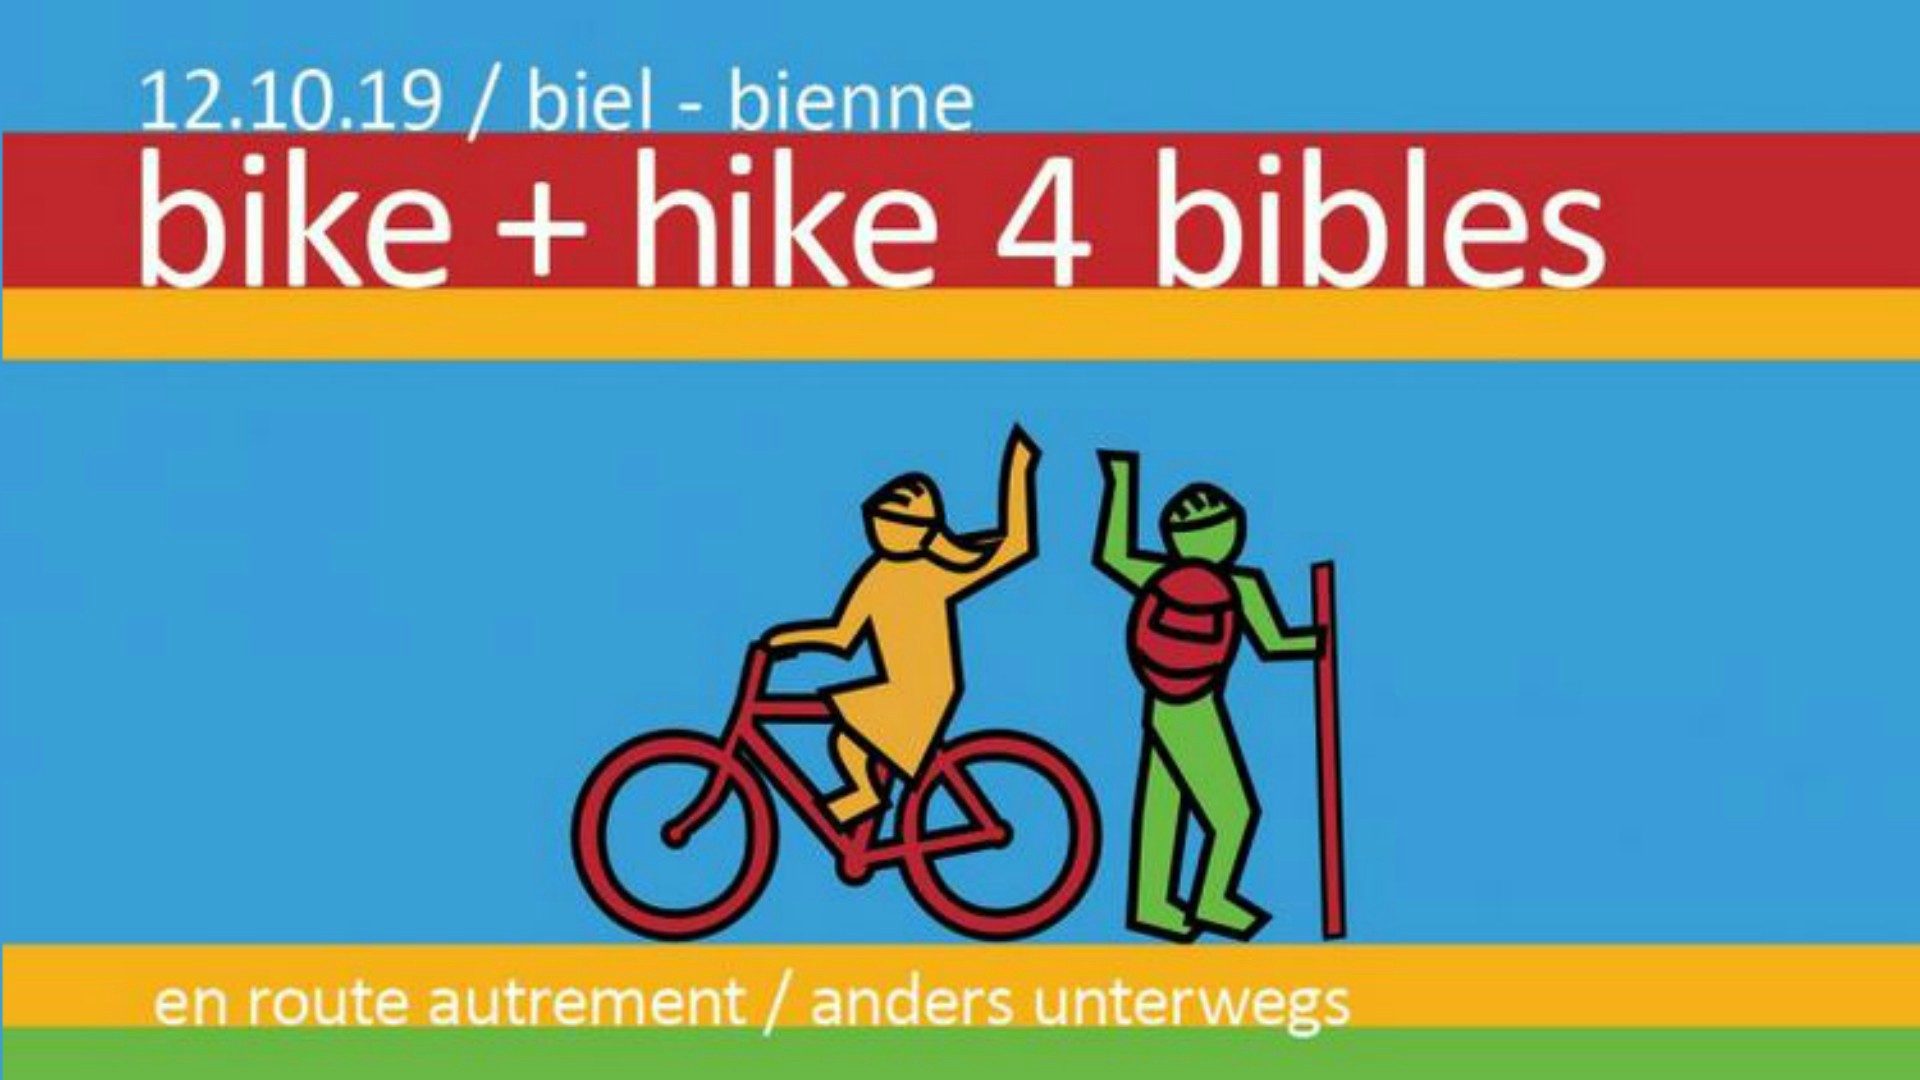 La Société biblique suisse organise le samedi 12 octobre 2019, au bord du lac de Bienne, l'événement bike+hike4bibles | SBS